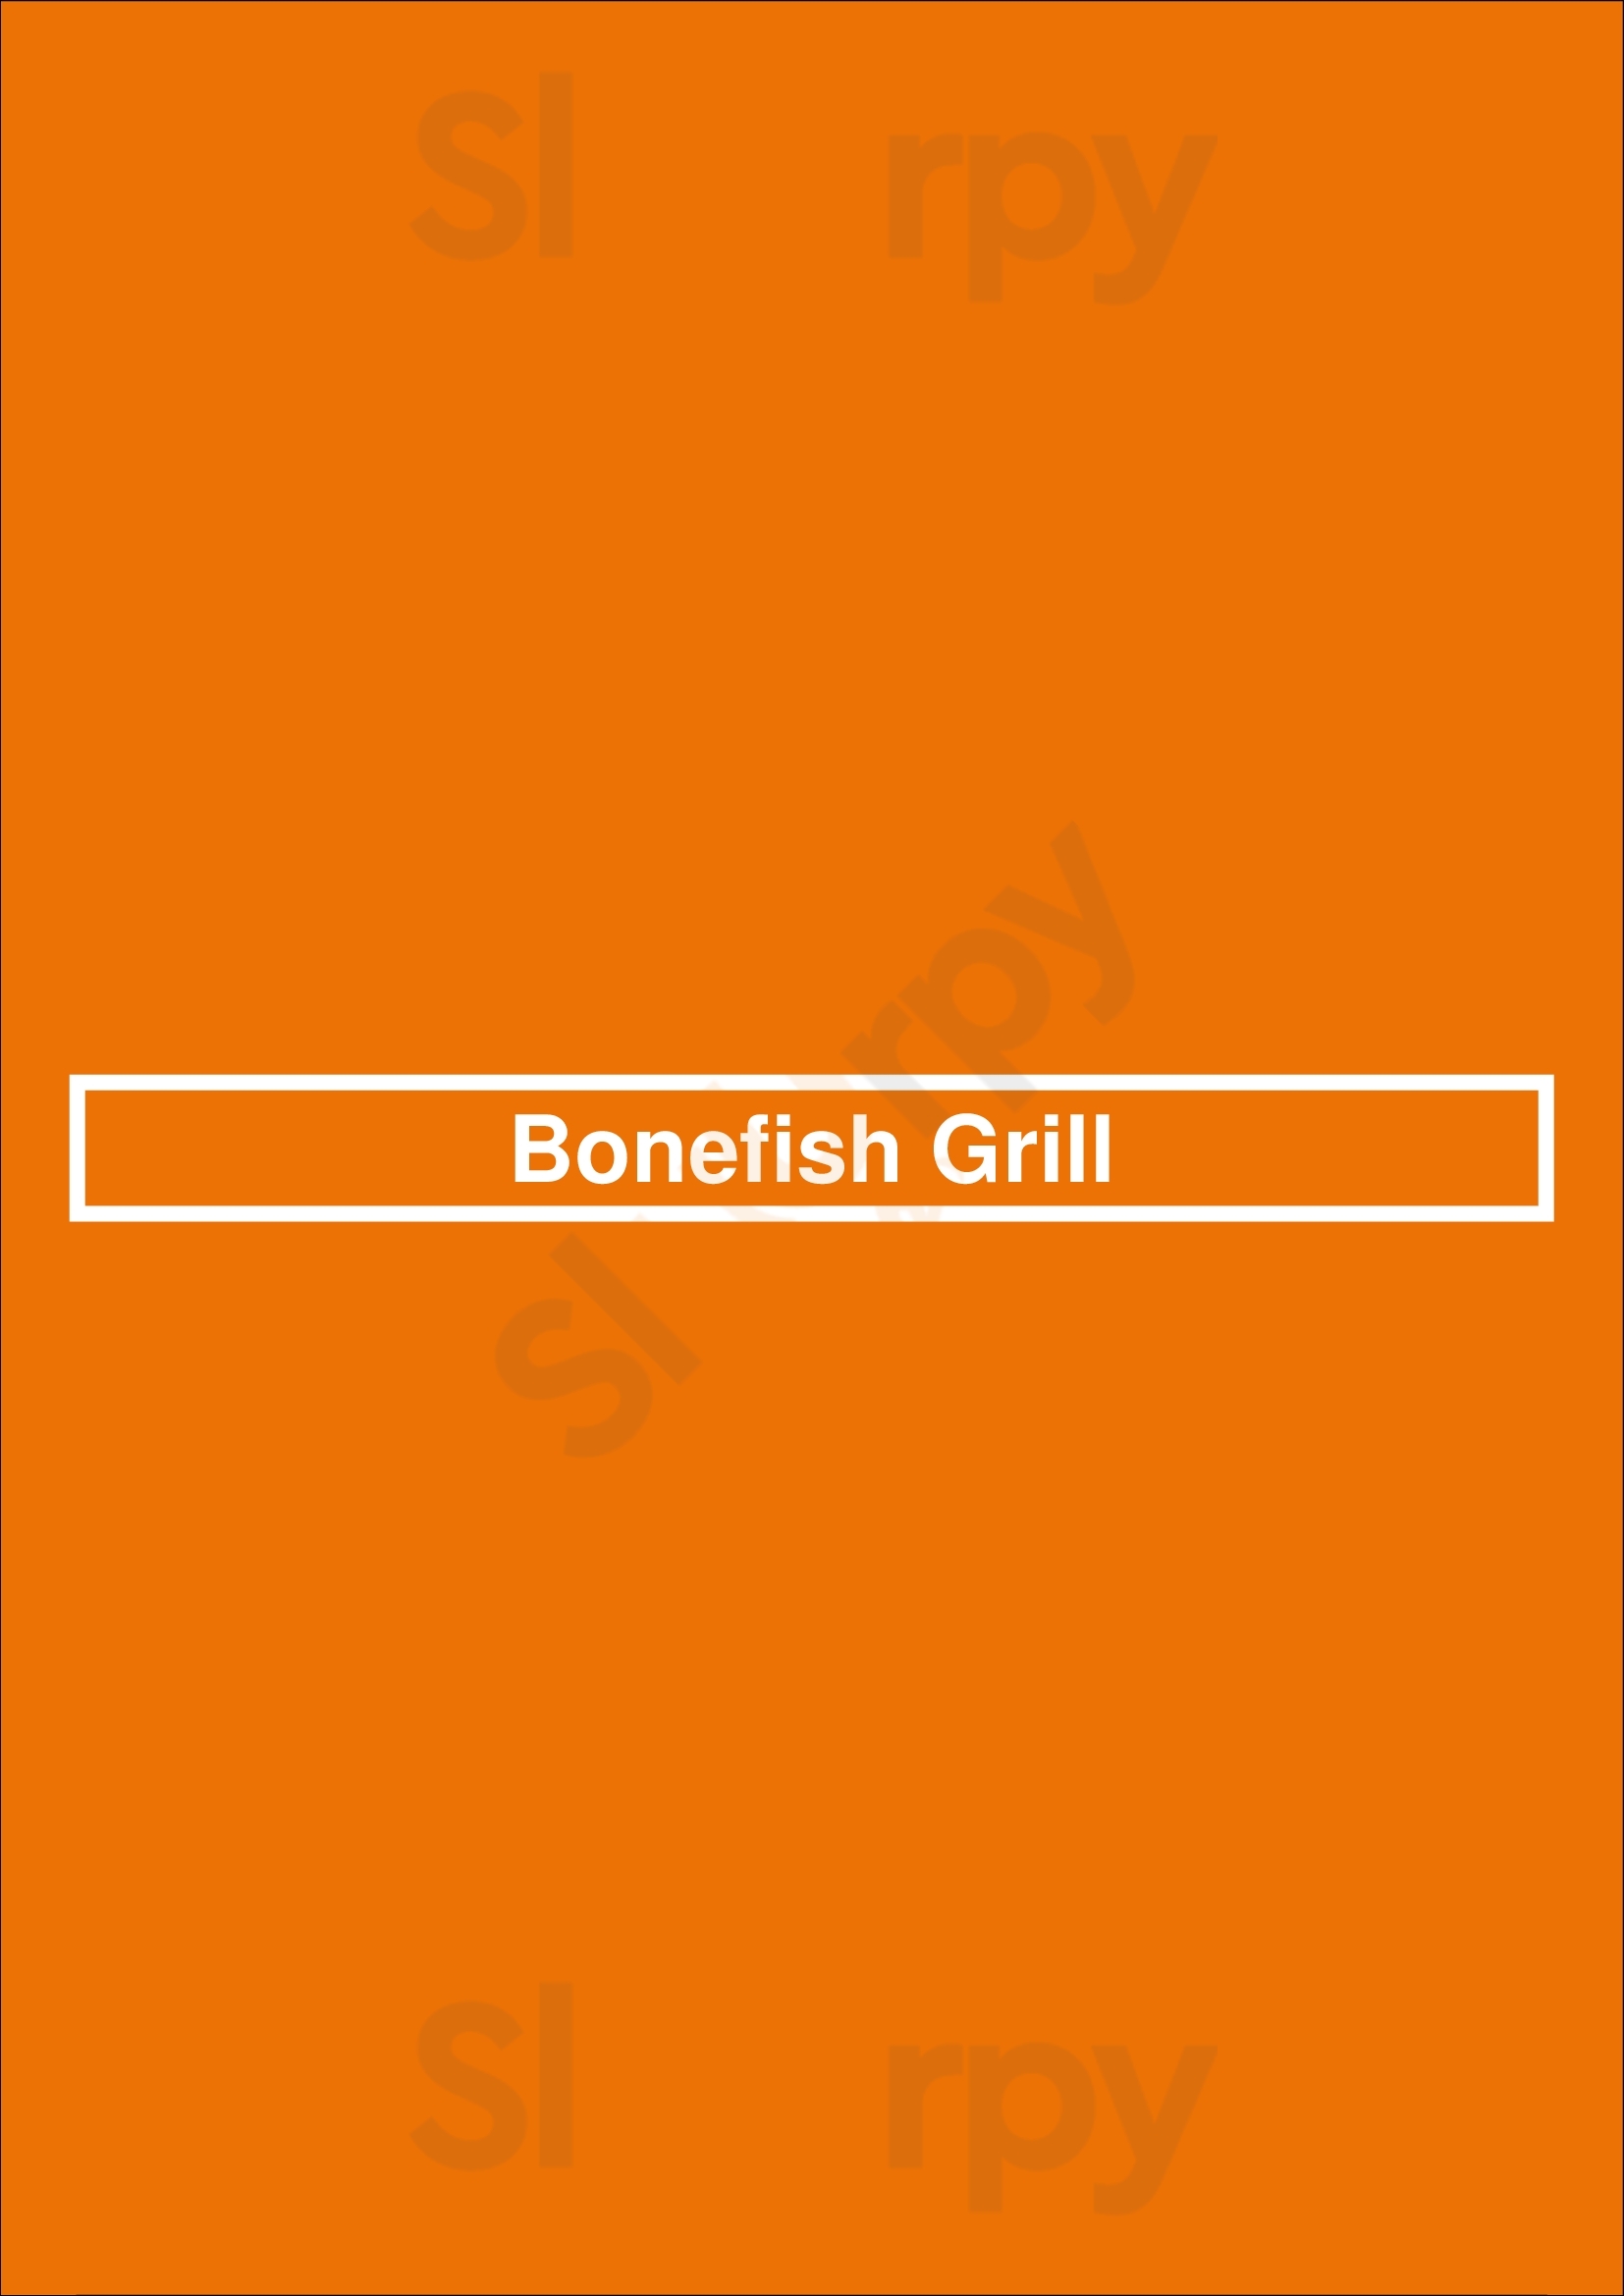 Bonefish Grill Atlanta Menu - 1